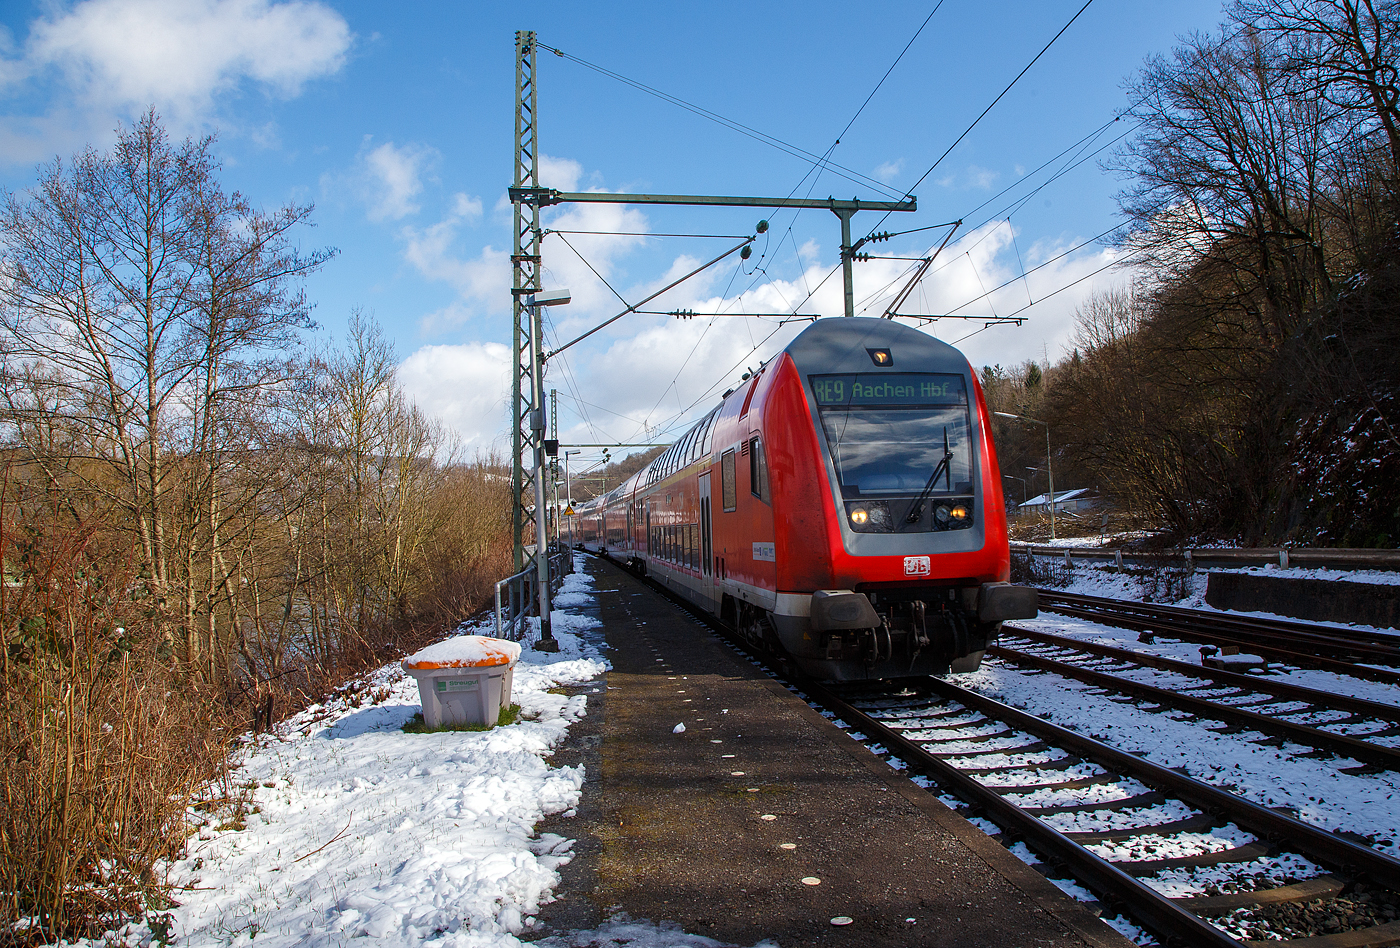 Steuerwagen voraus rauscht der RE 9 rsx - Rhein-Sieg-Express (Siegen – Köln – Aachen) am 15.03.2023 durch Scheuerfeld (Sieg) in Richtung Köln. Schublok war die 146 006-2 (91 80 6146 006-2 D-DB) der DB Regio NRW.